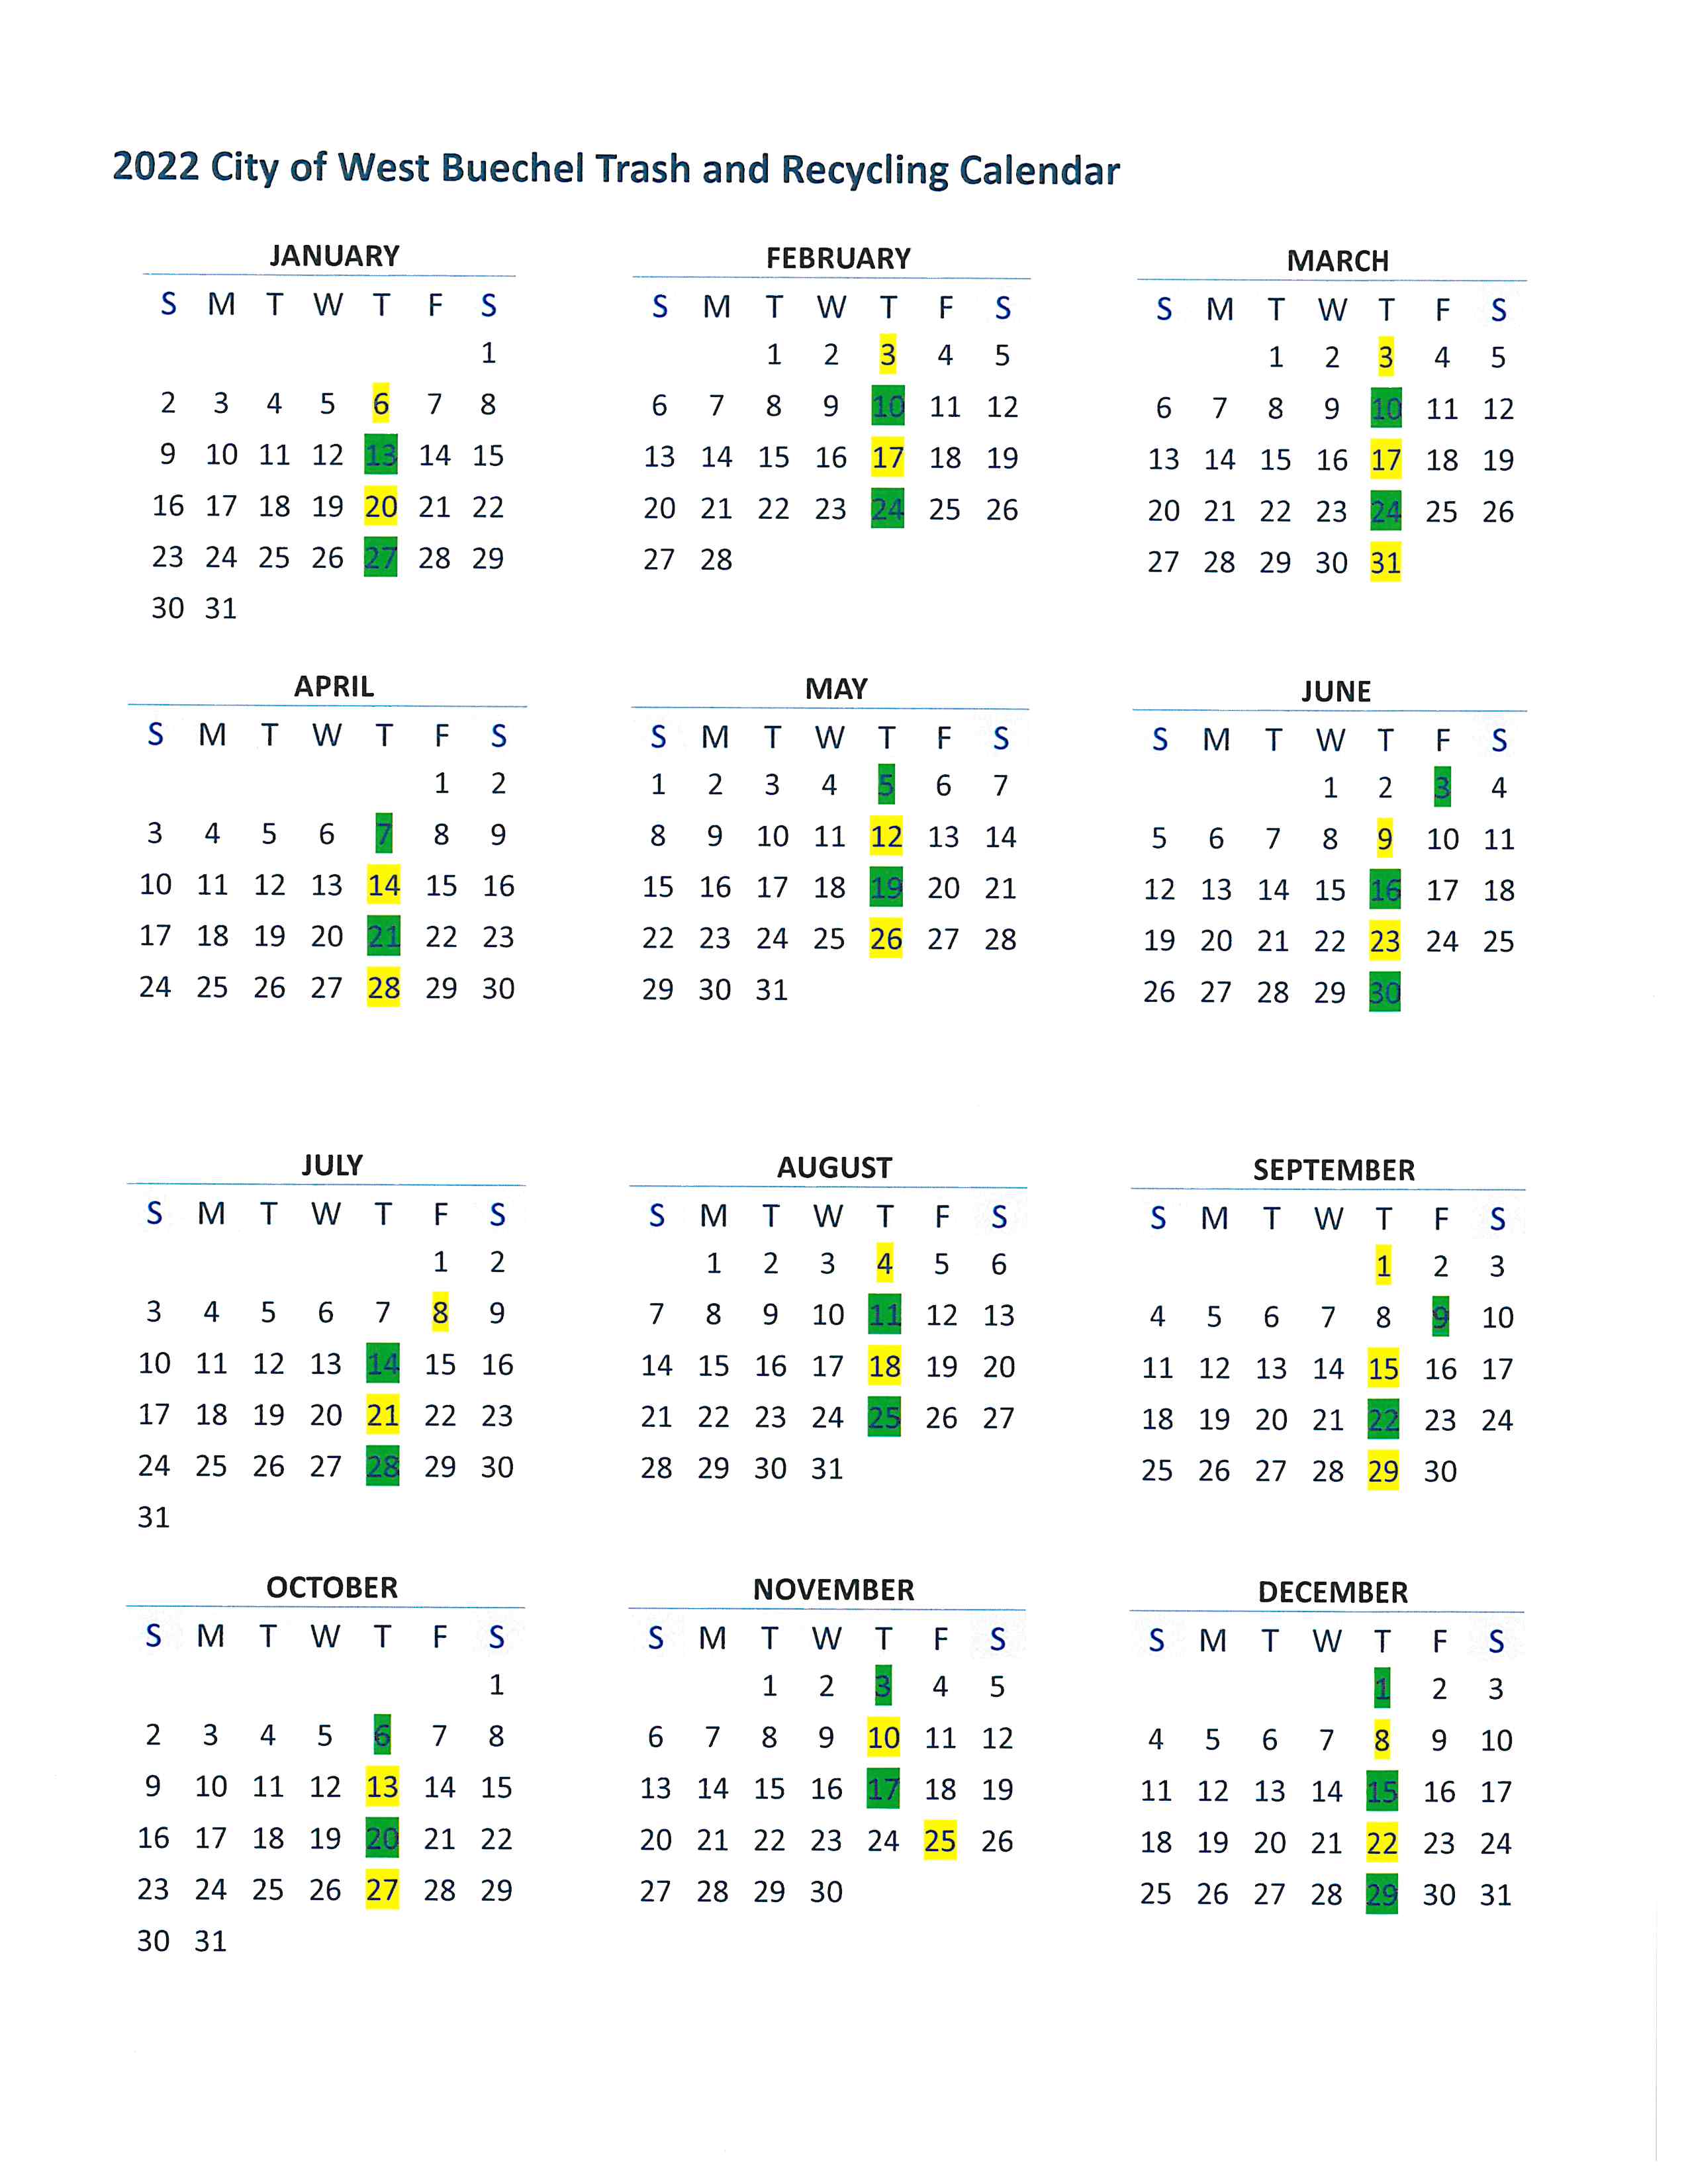 WM Calendar.jpg